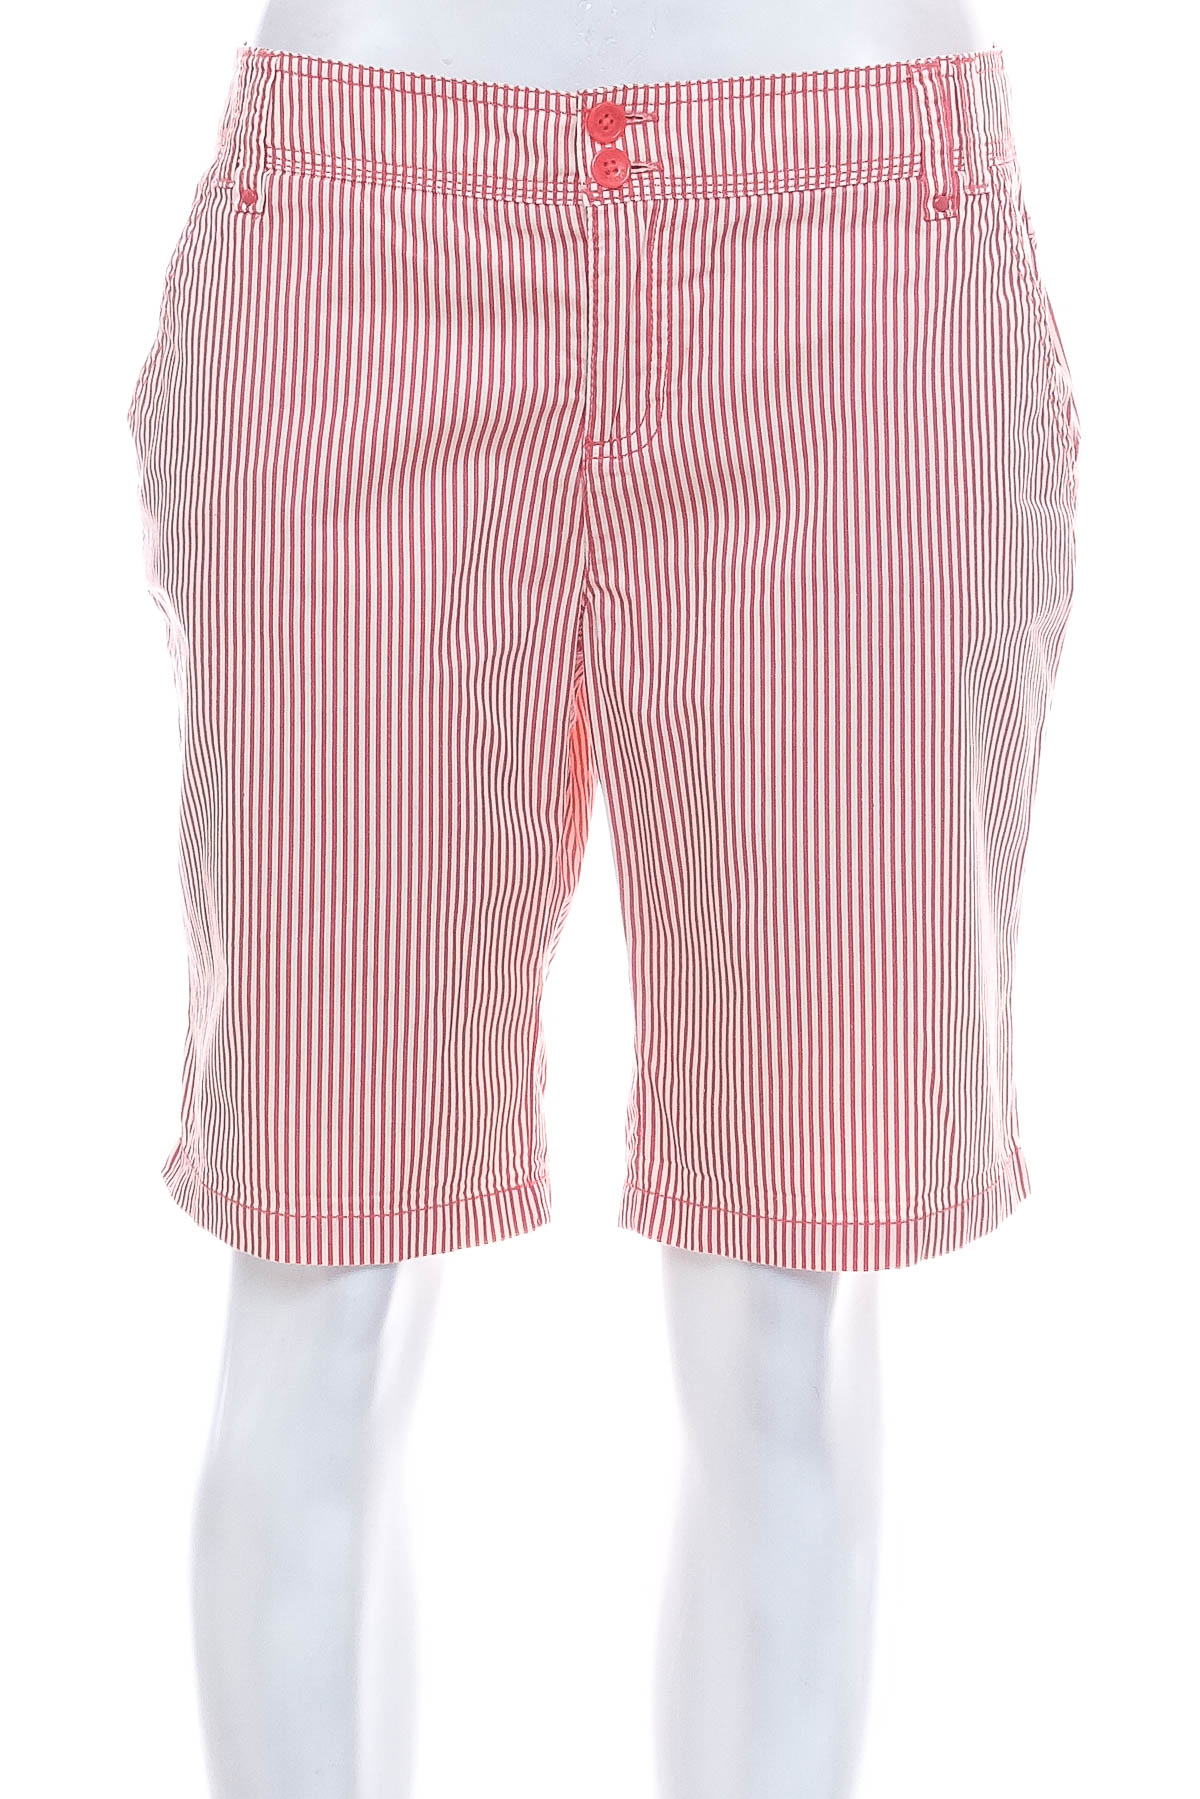 Krótkie spodnie damskie - Biaggini - 0